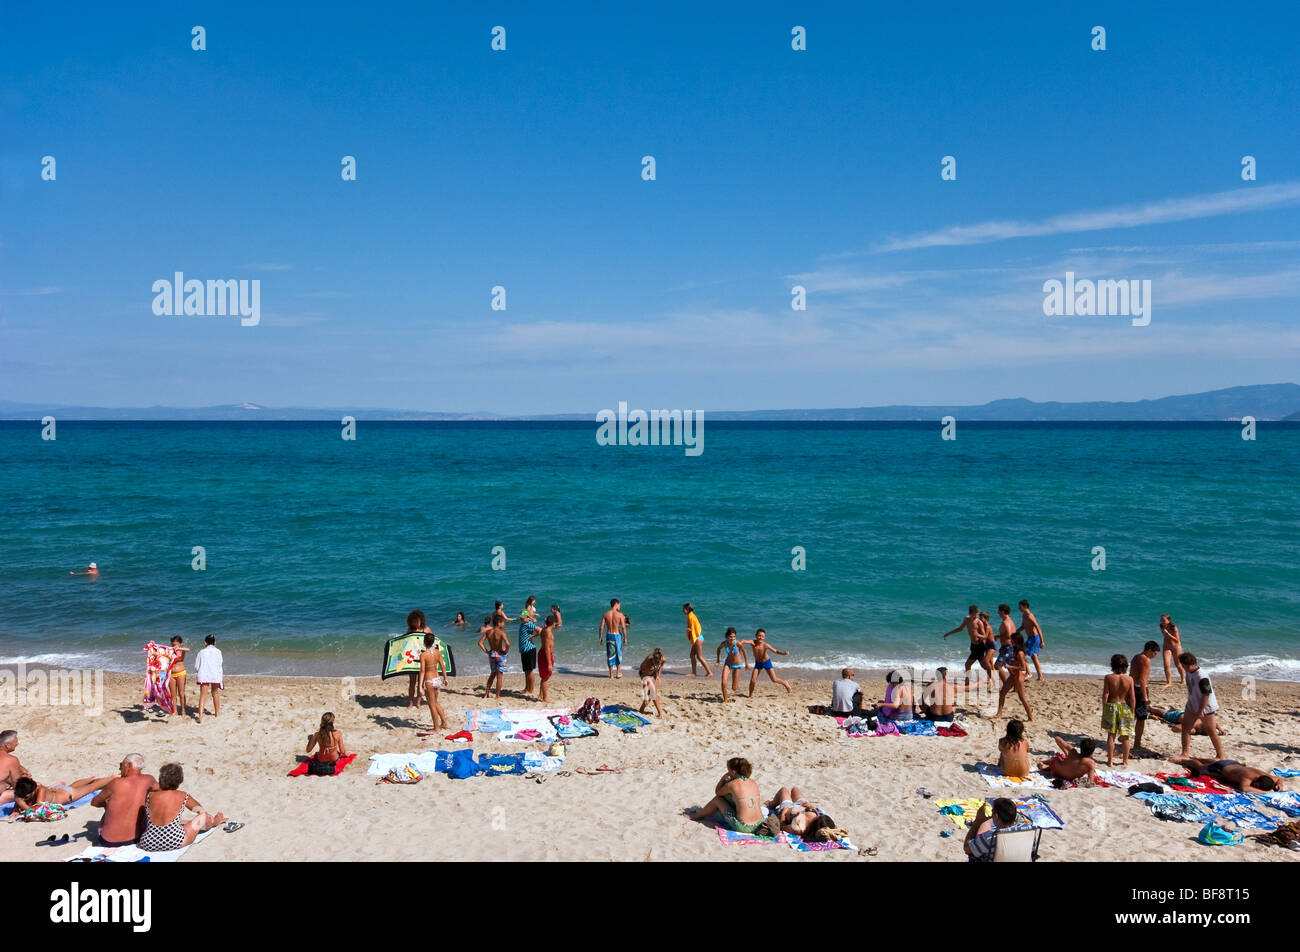 Hanioti Beach,Halkidiki, Greece. Stock Photo